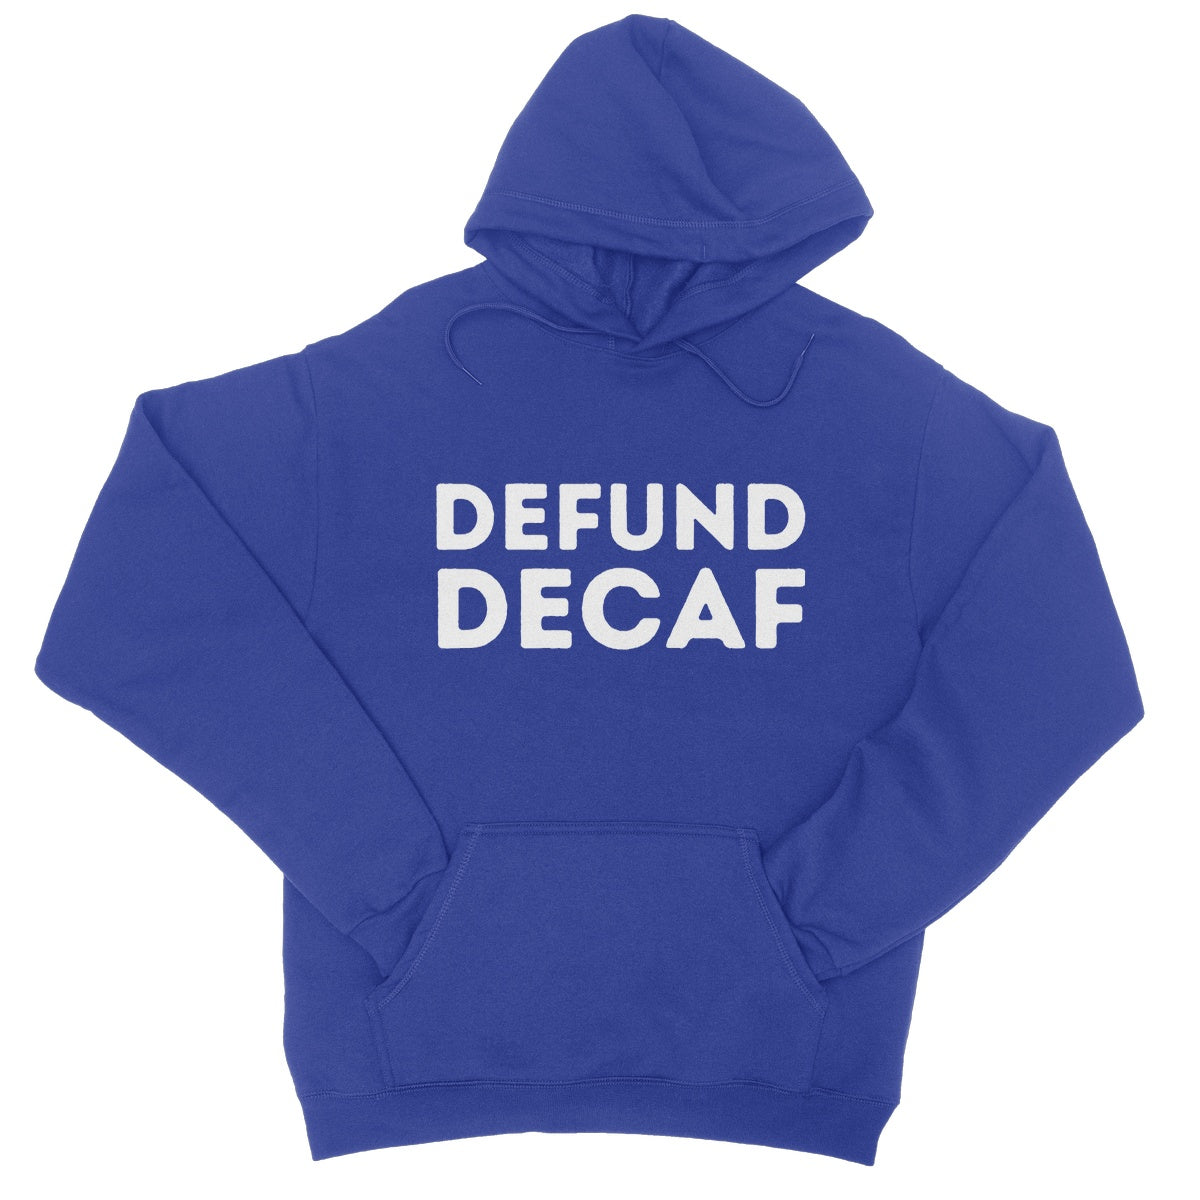 defund decaf hoodie blue